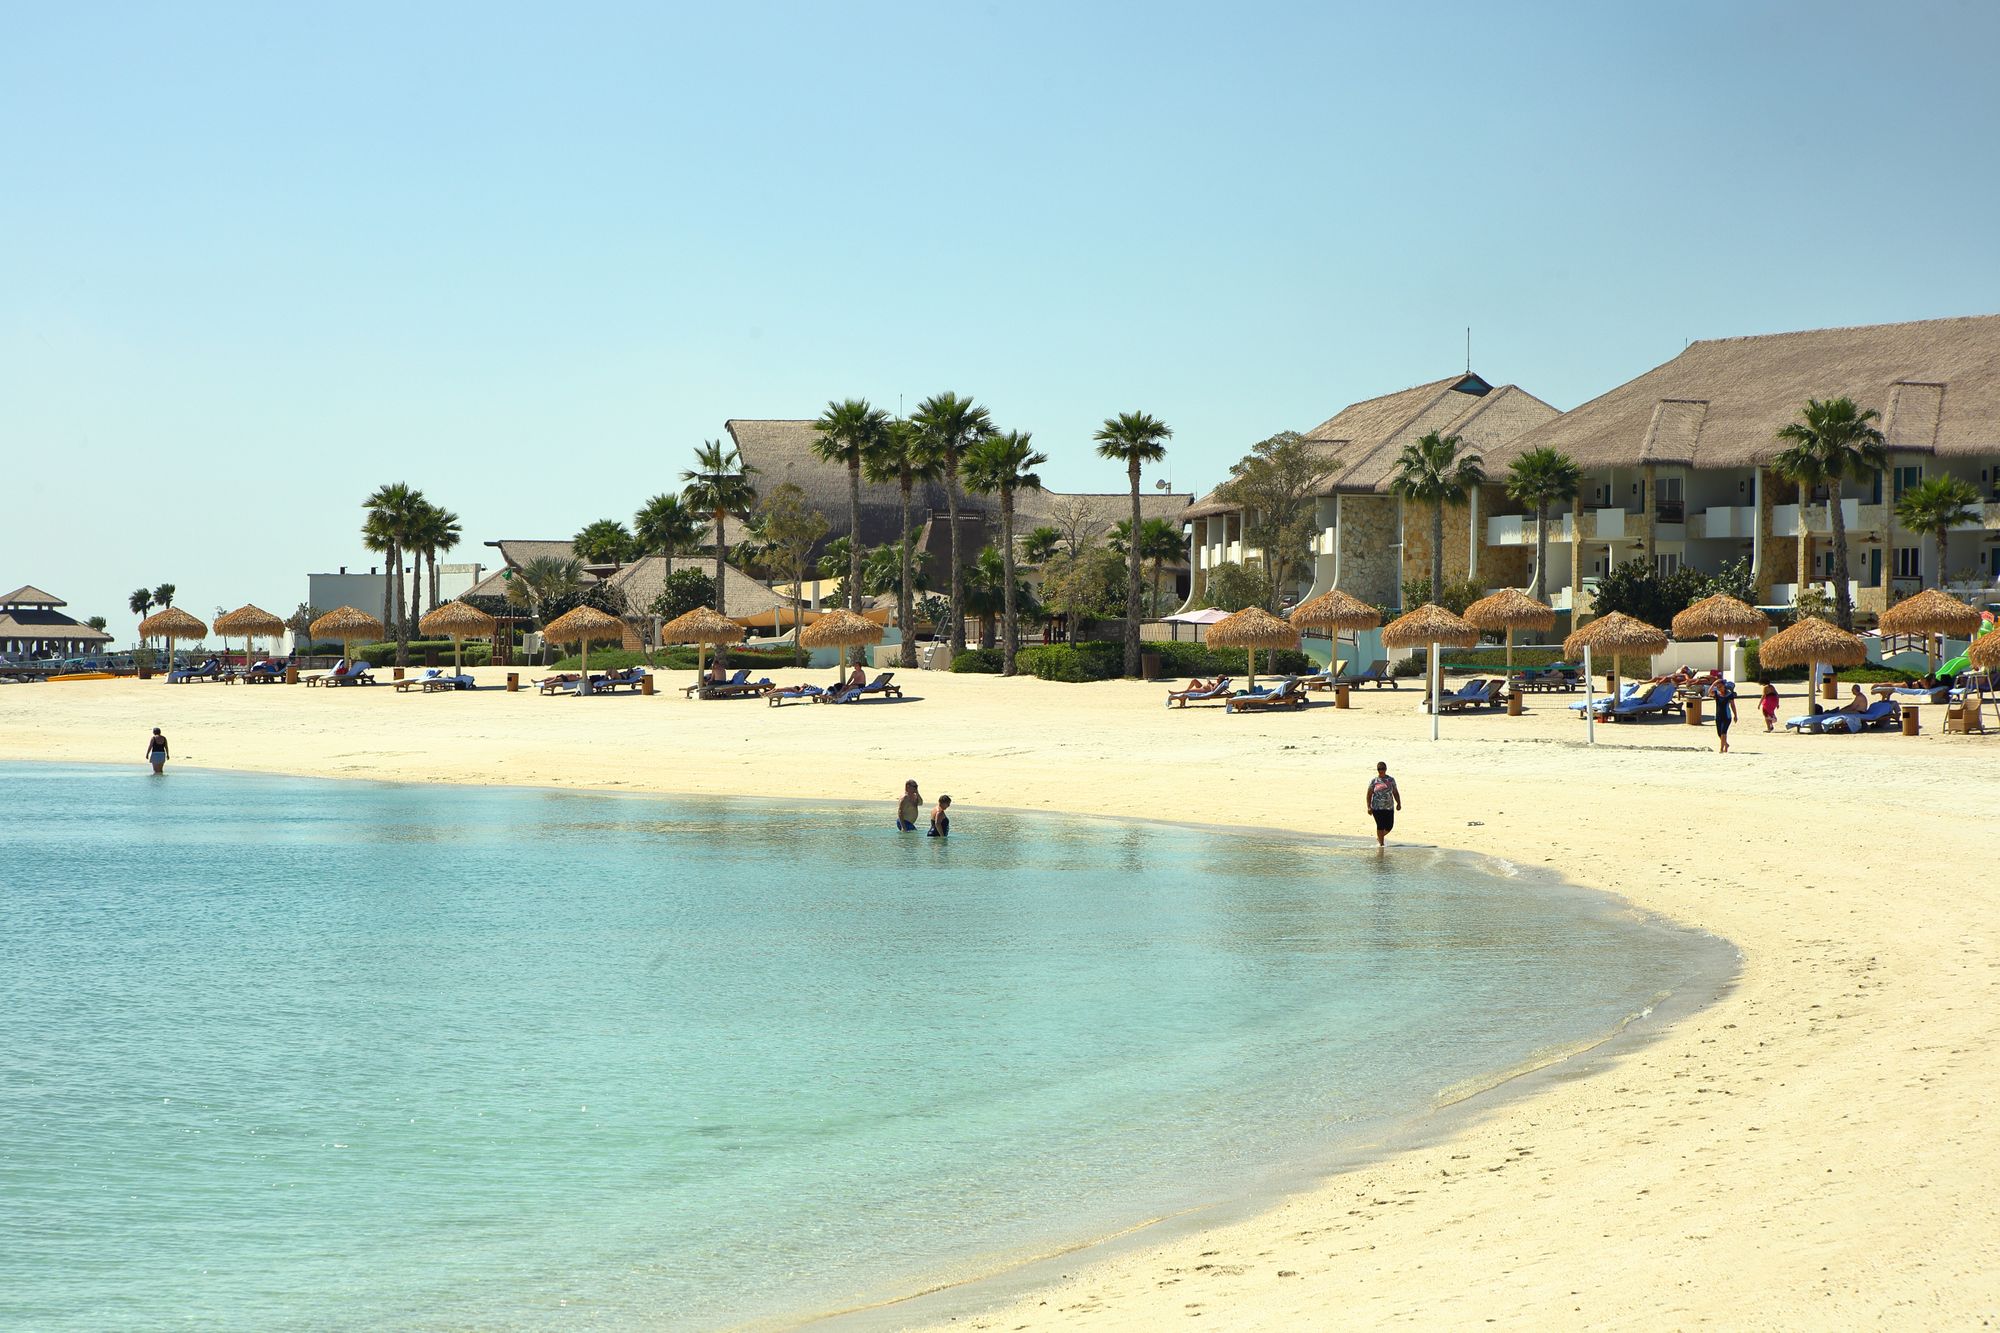 Banana Island Resort Beach in Qatar